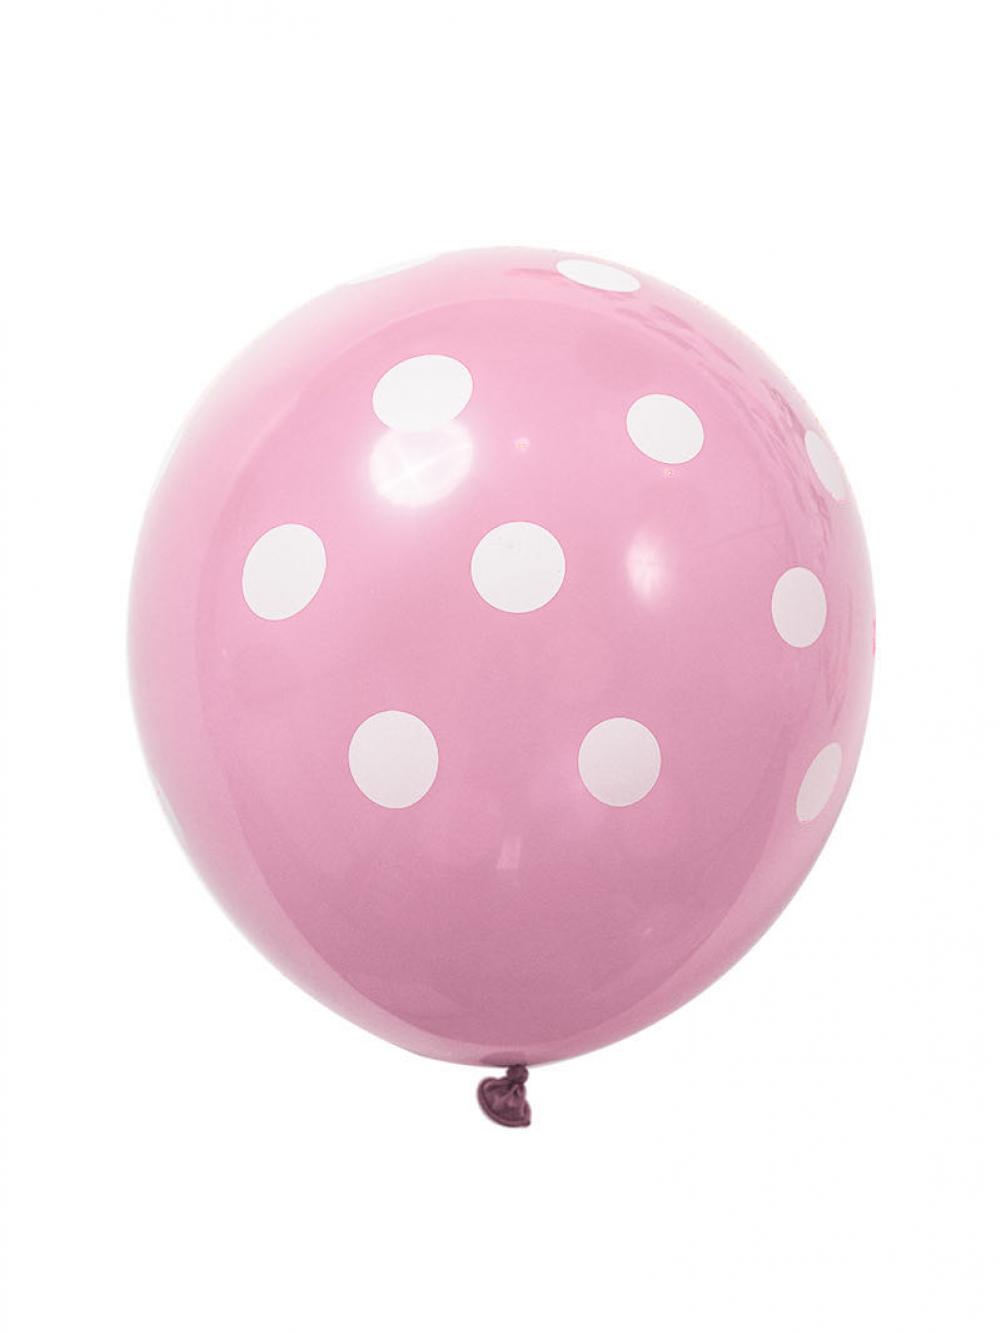 12 Inch Standard Polka Dot Balloons Pale Pink Balloon White Dot (100PCS)